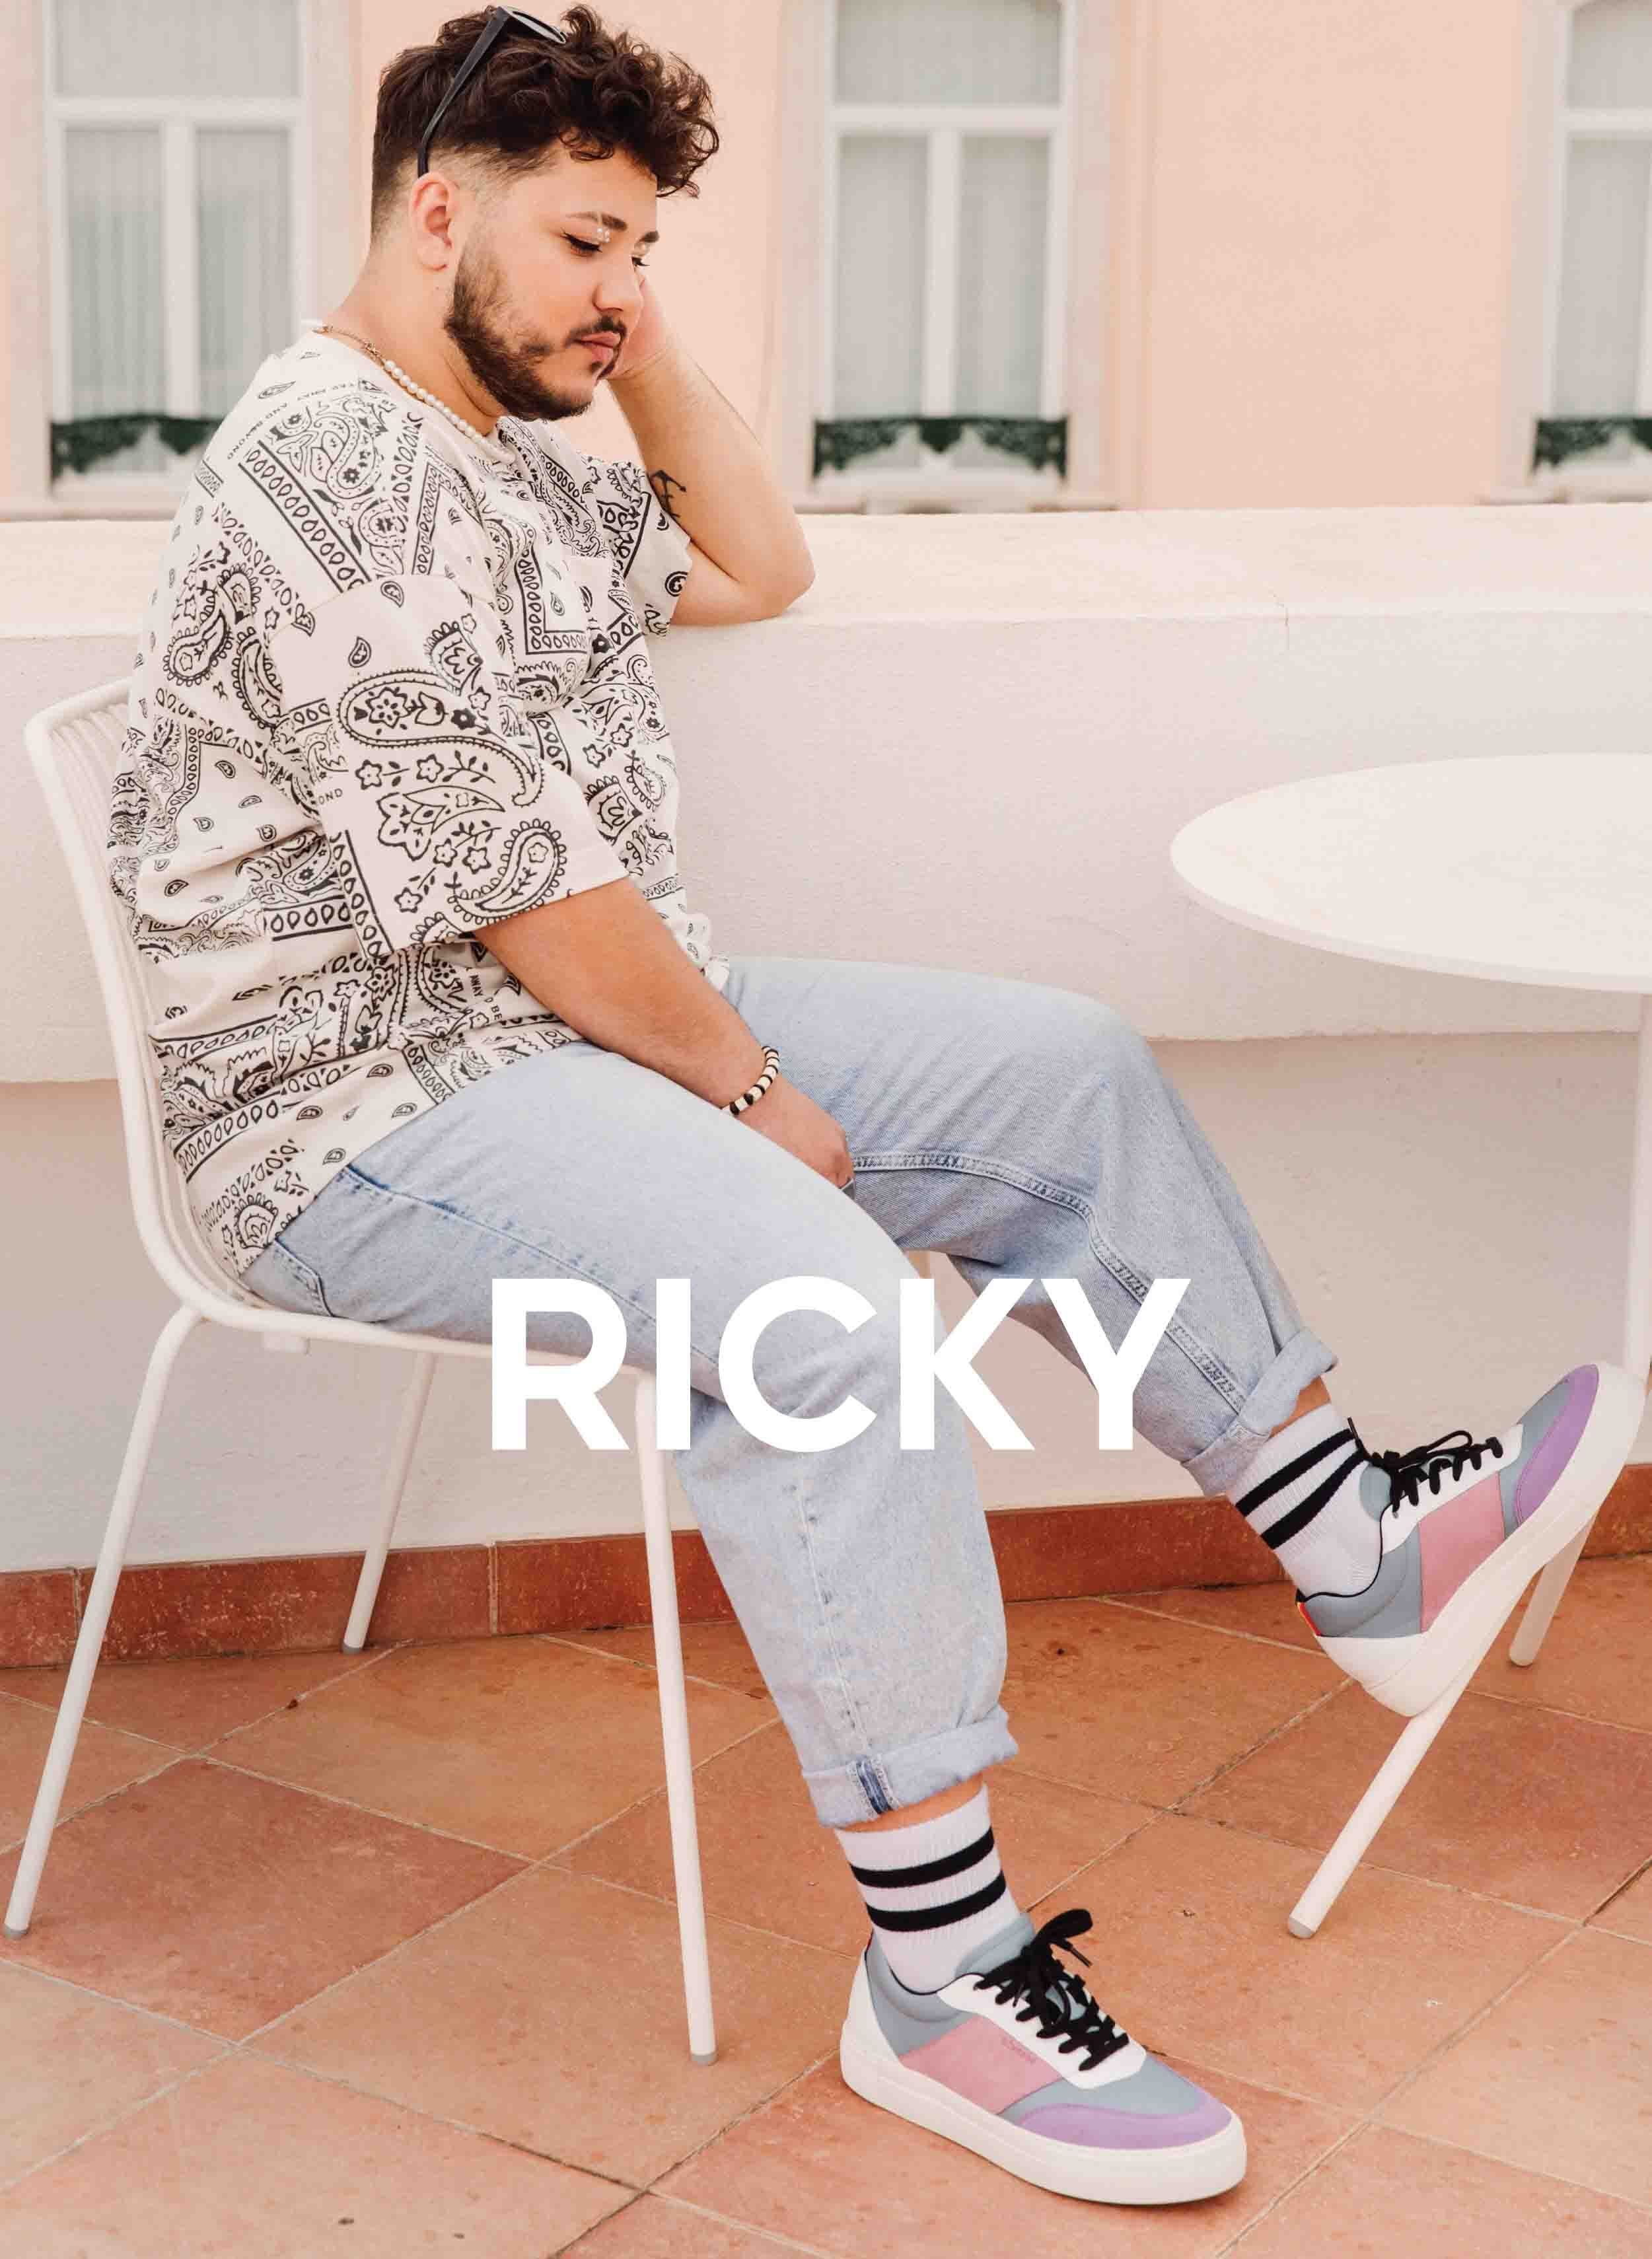 Ricky Er sitzt auf einem Stuhl und schaut sich seine Gewohnheit an Diverge sneakers, Förderung sozialer Auswirkungen und maßgefertigter Schuhe im Rahmen des IMAGINE-Projekts.   